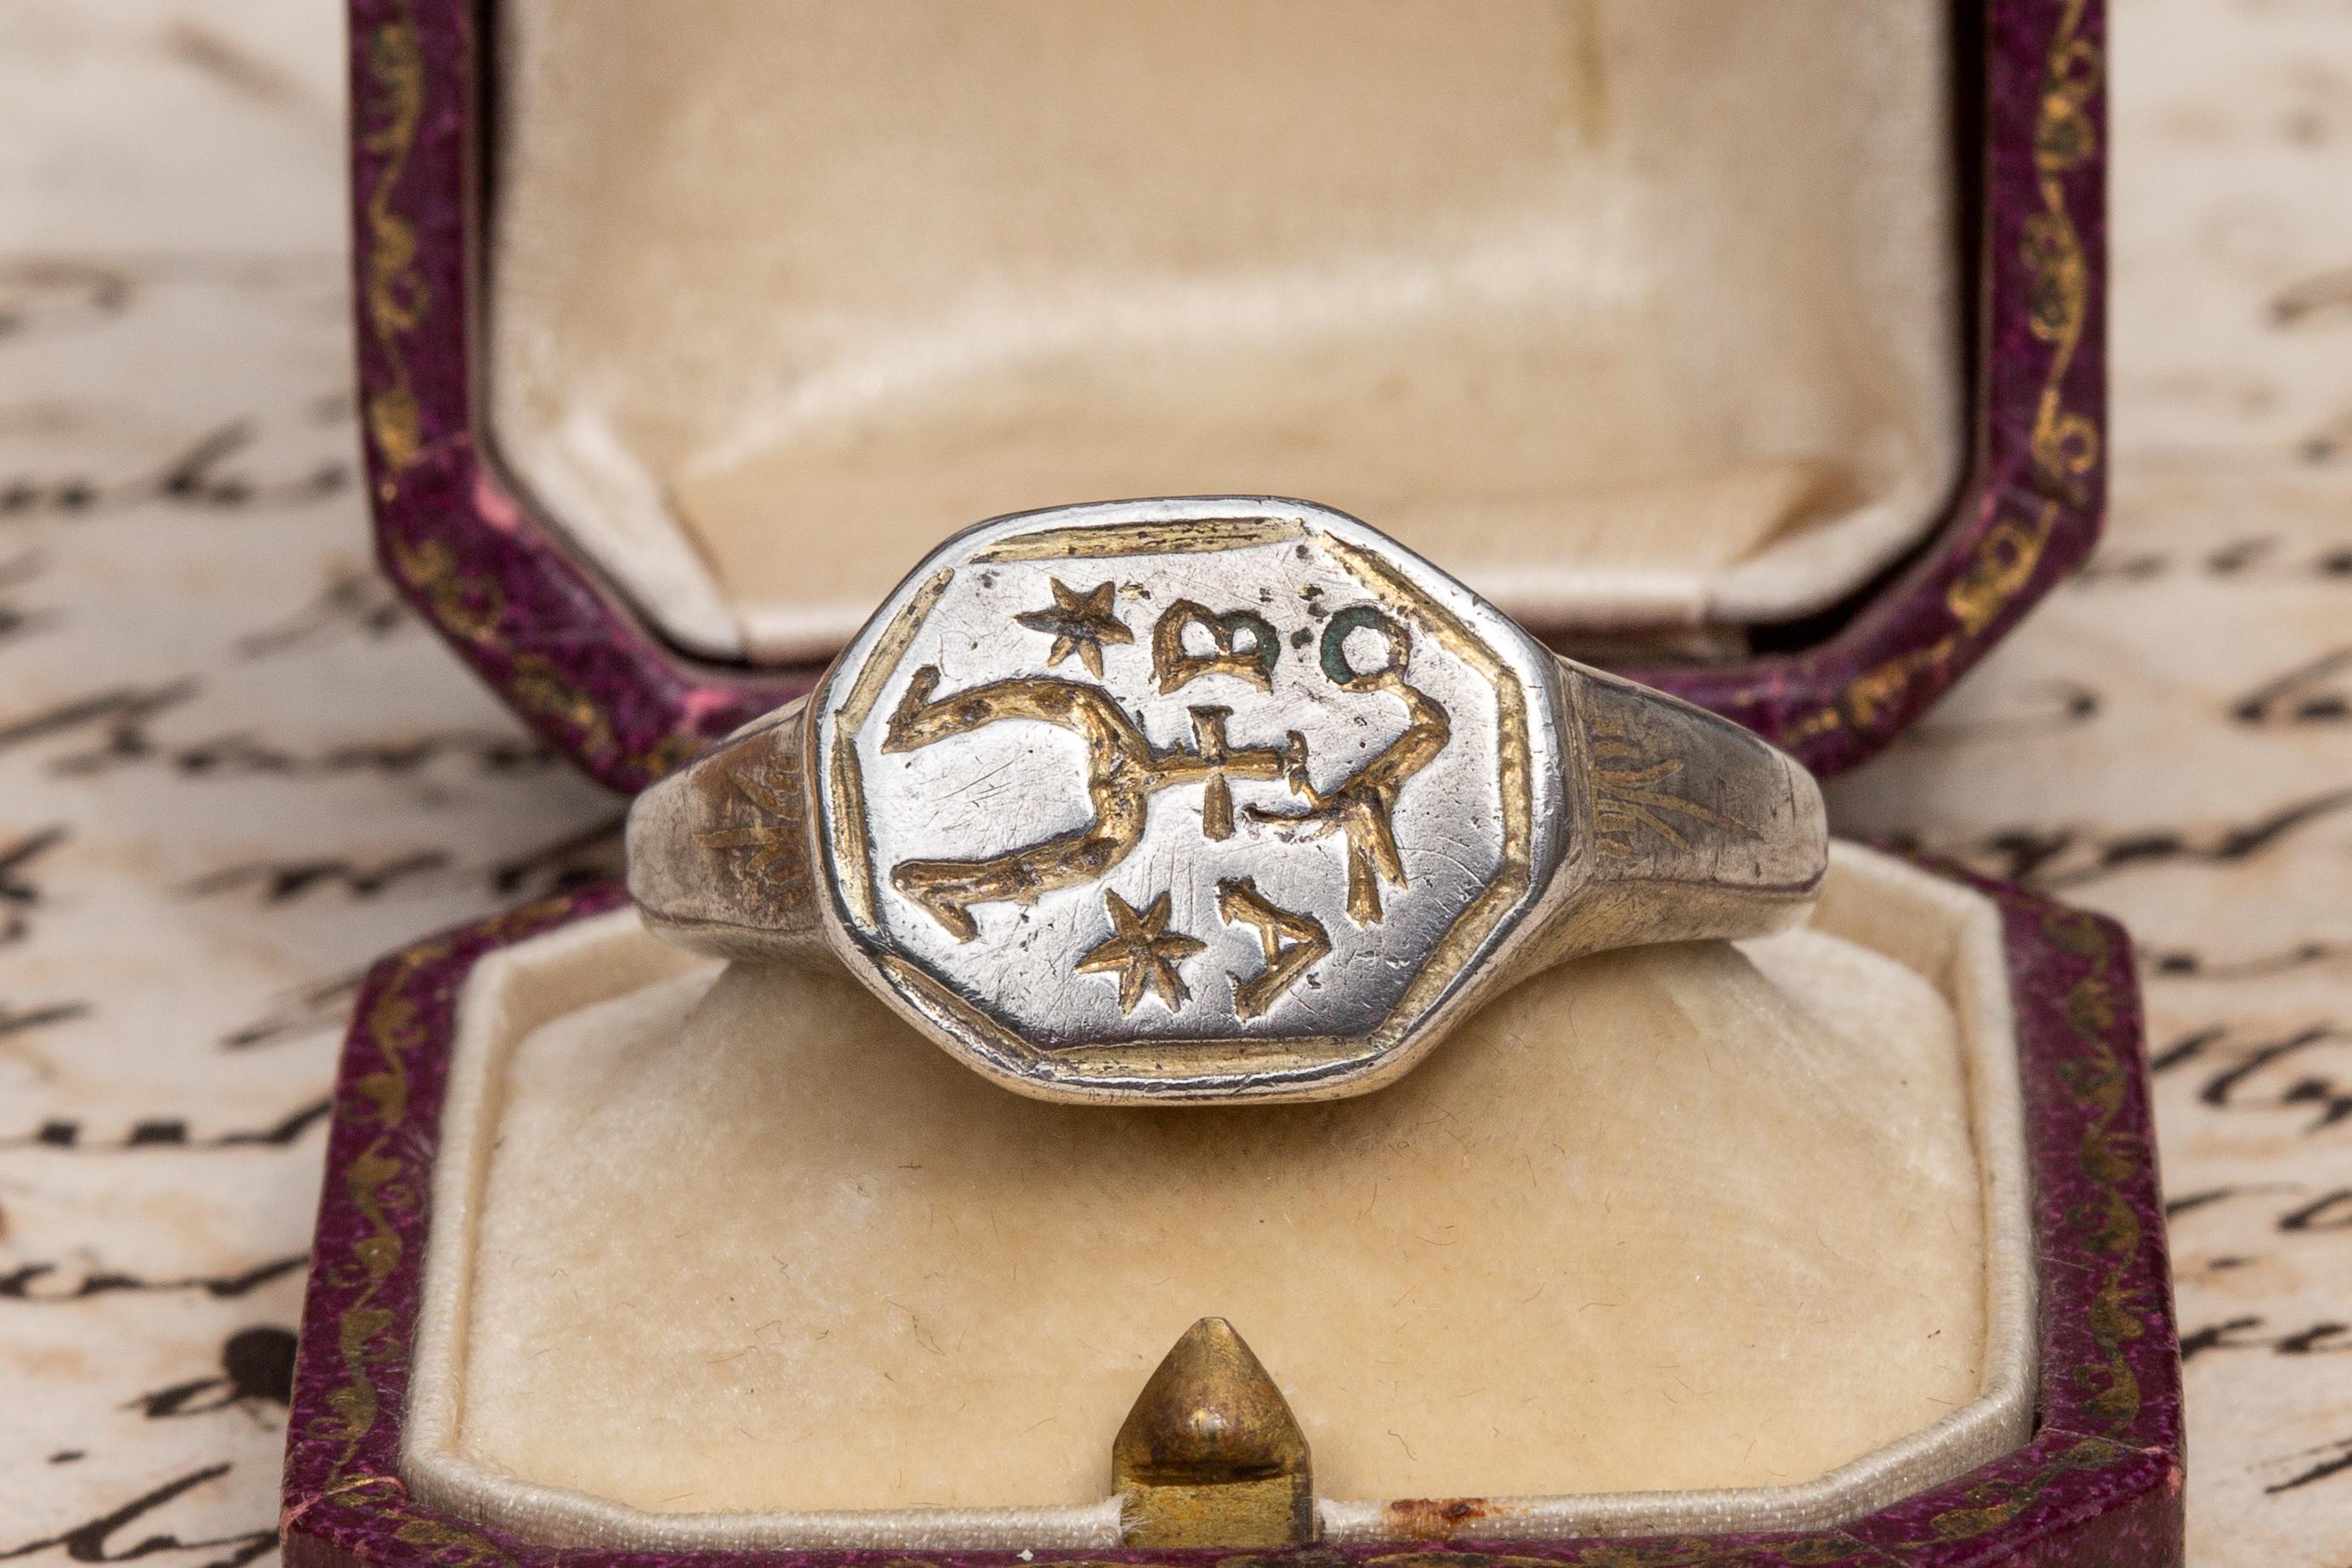 Cette rare chevalière héraldique en argent en creux date du XVIe siècle et provient de Pologne. La lunette octogonale est gravée d'un blason de la noblesse polonaise (szlachta) connu sous le nom de 